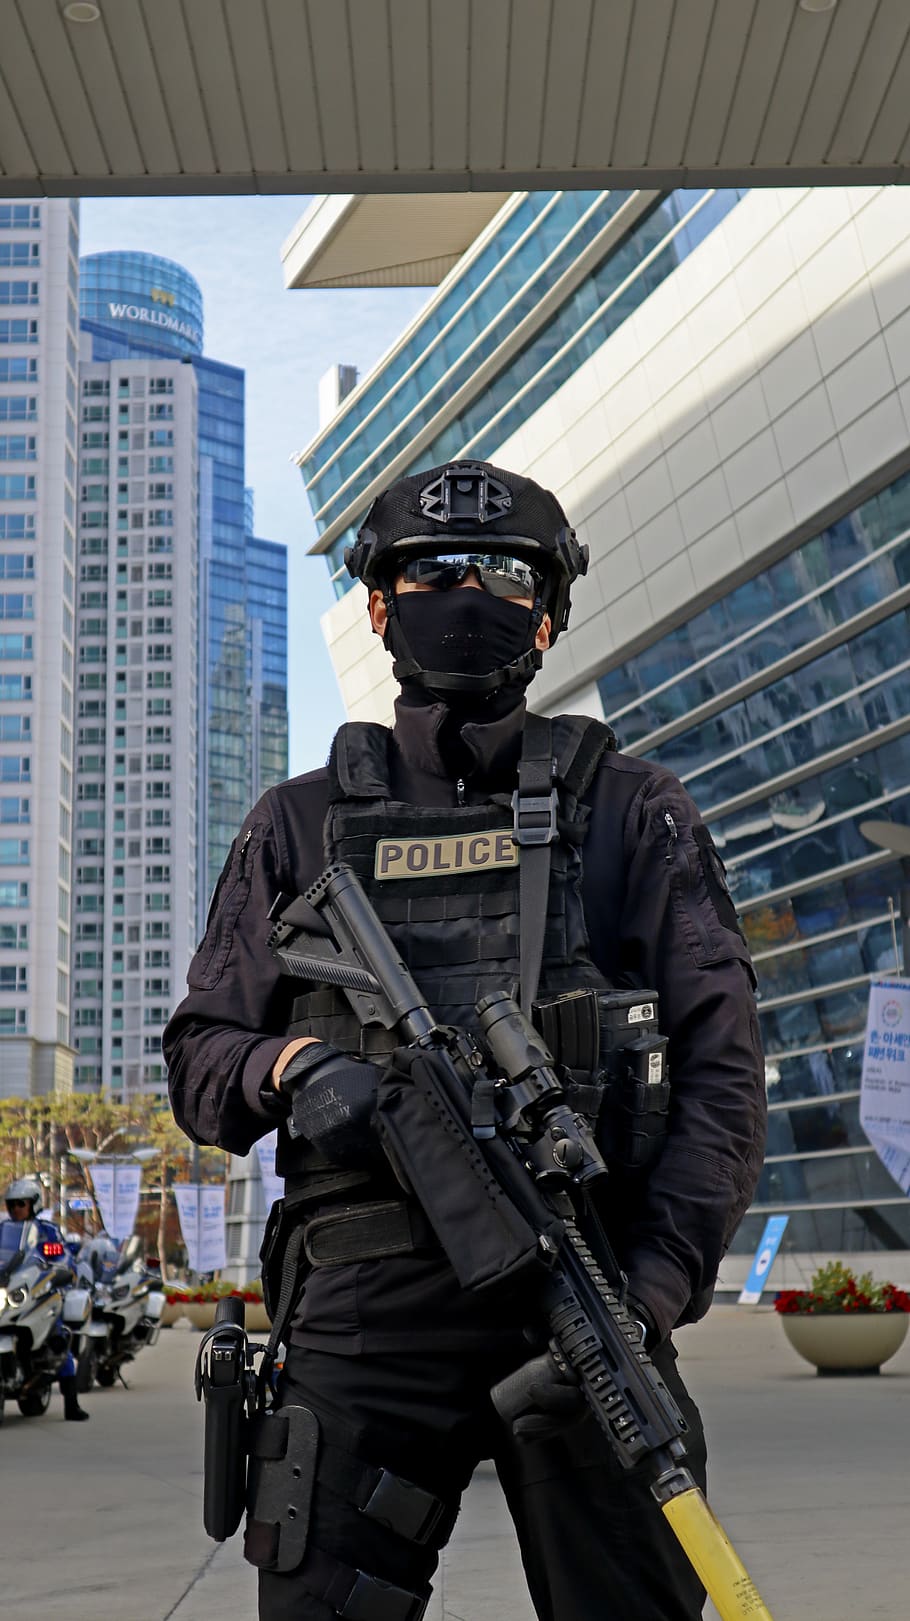 bersenjata, POLISI, petugas, menjaga, senjata, pistol, tugas, senapan, busan, Korea